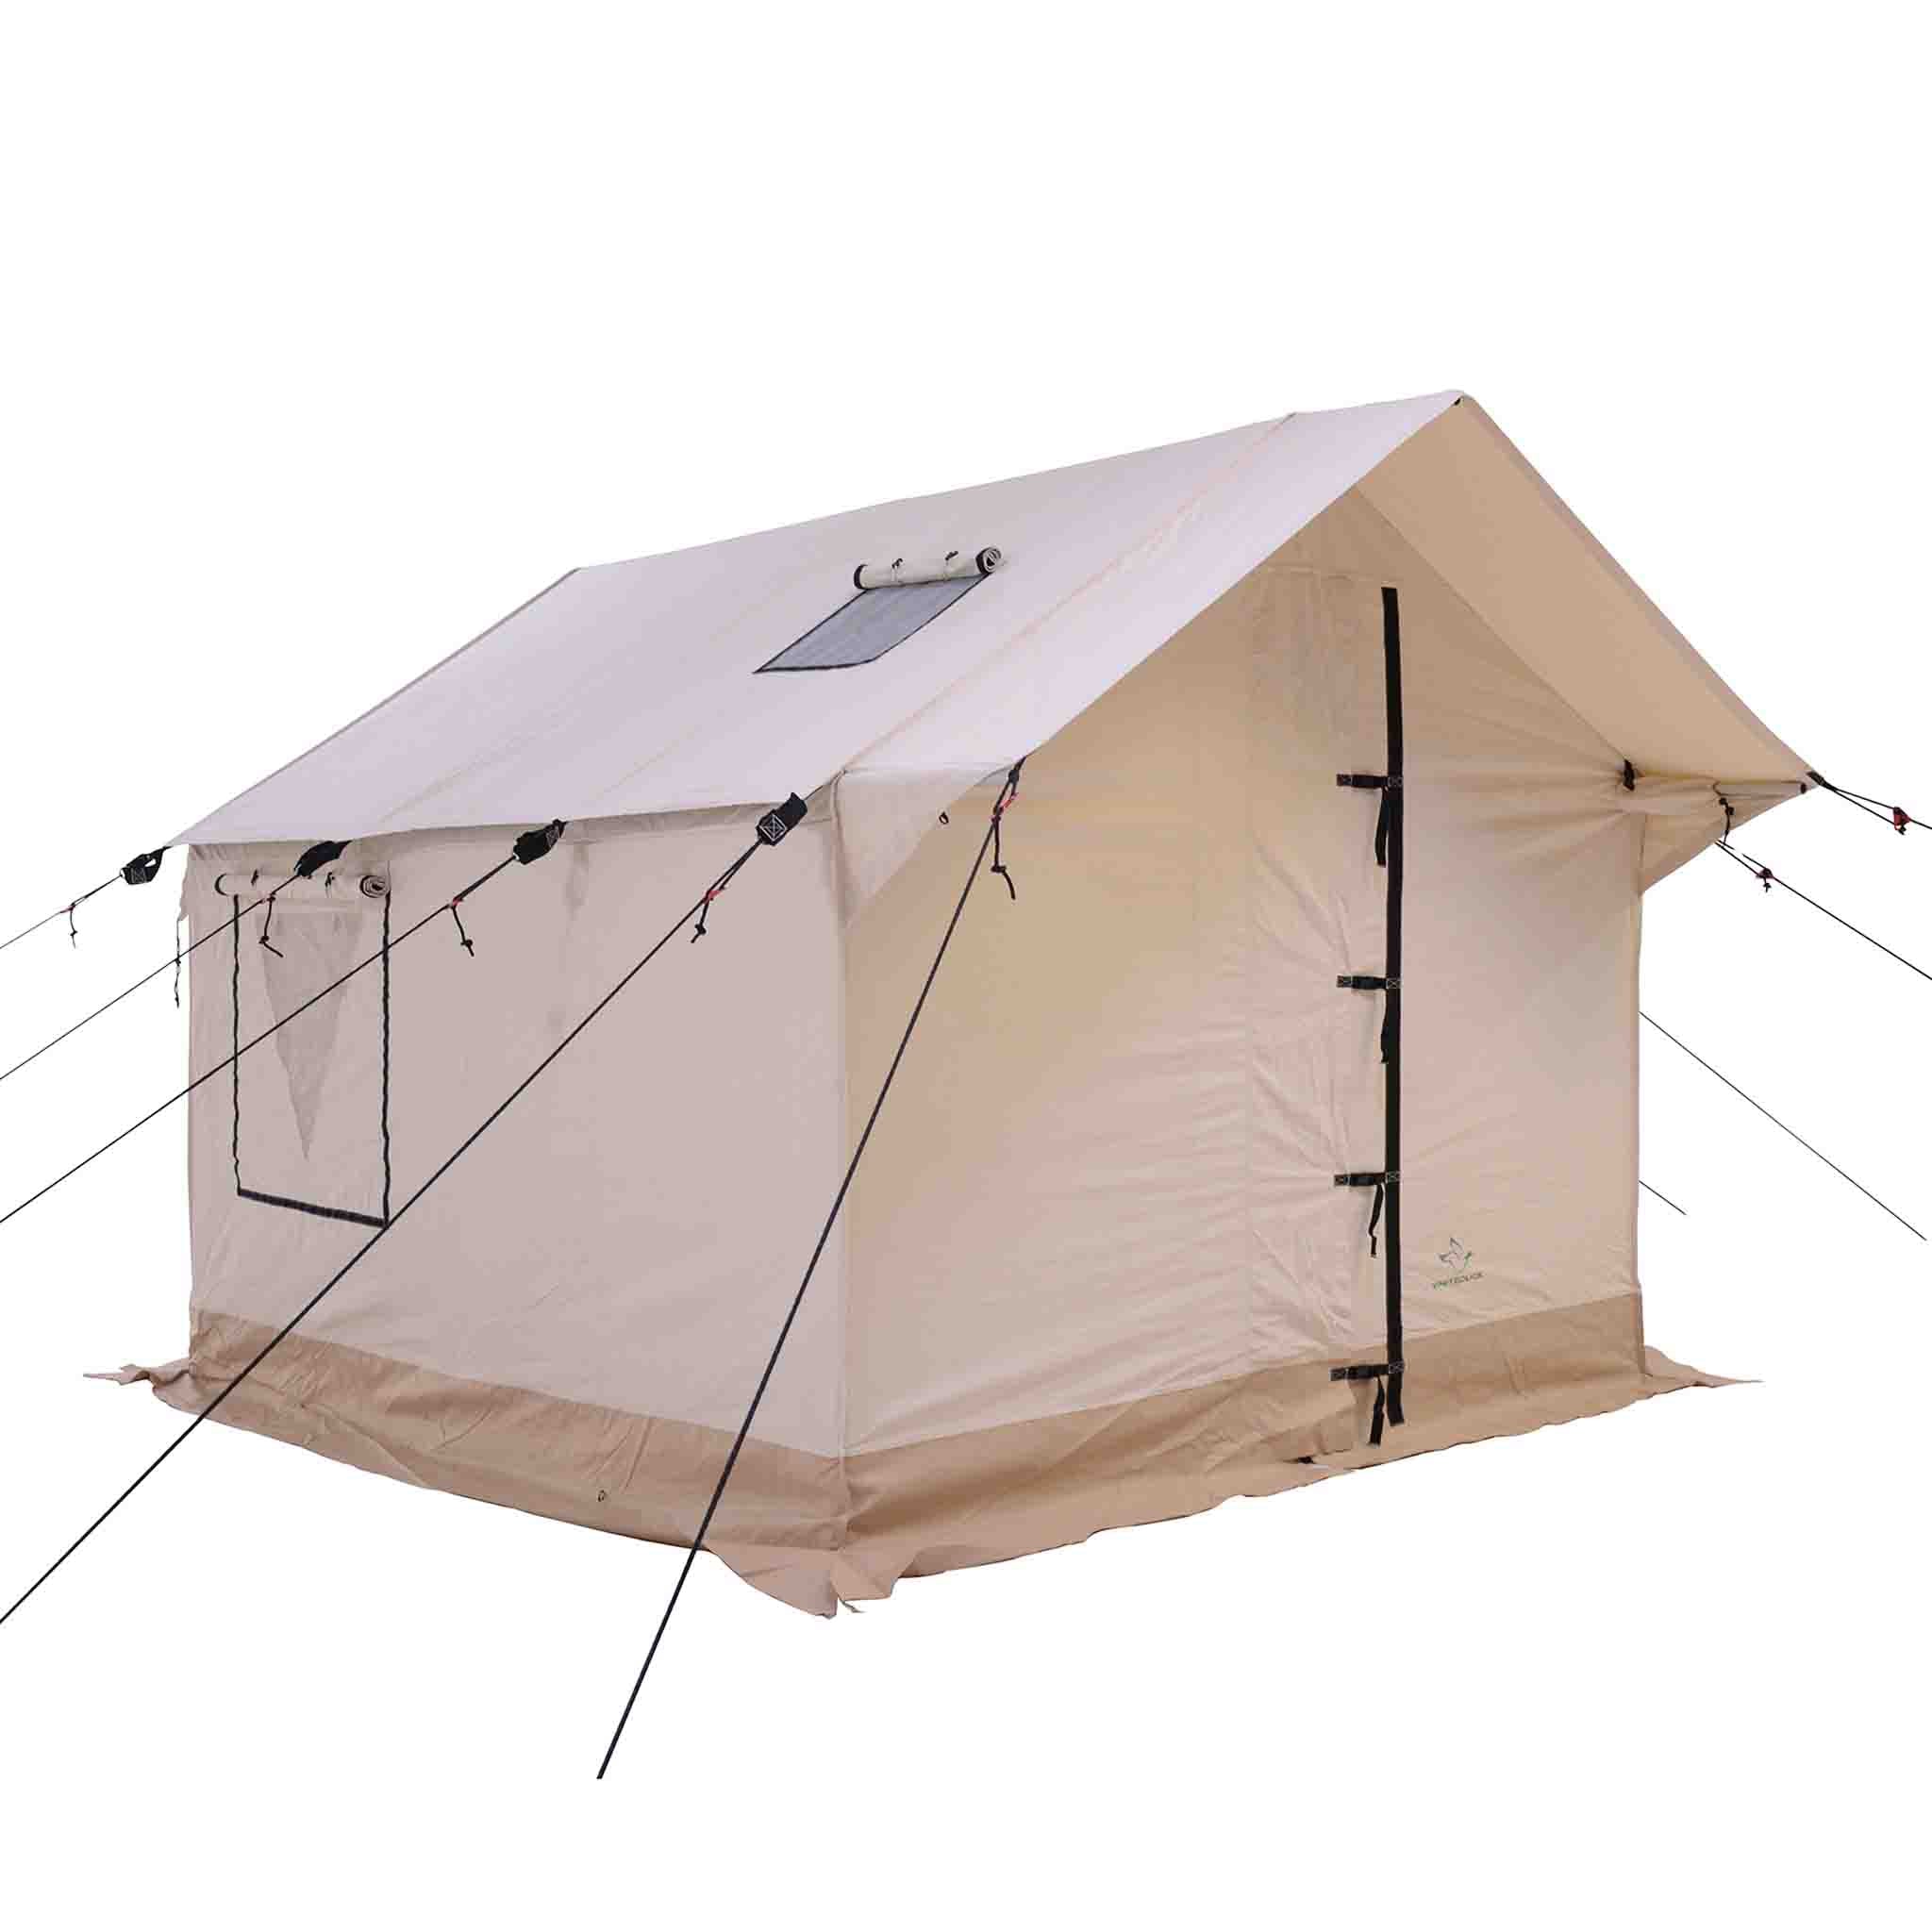 Alpha Wall Tent